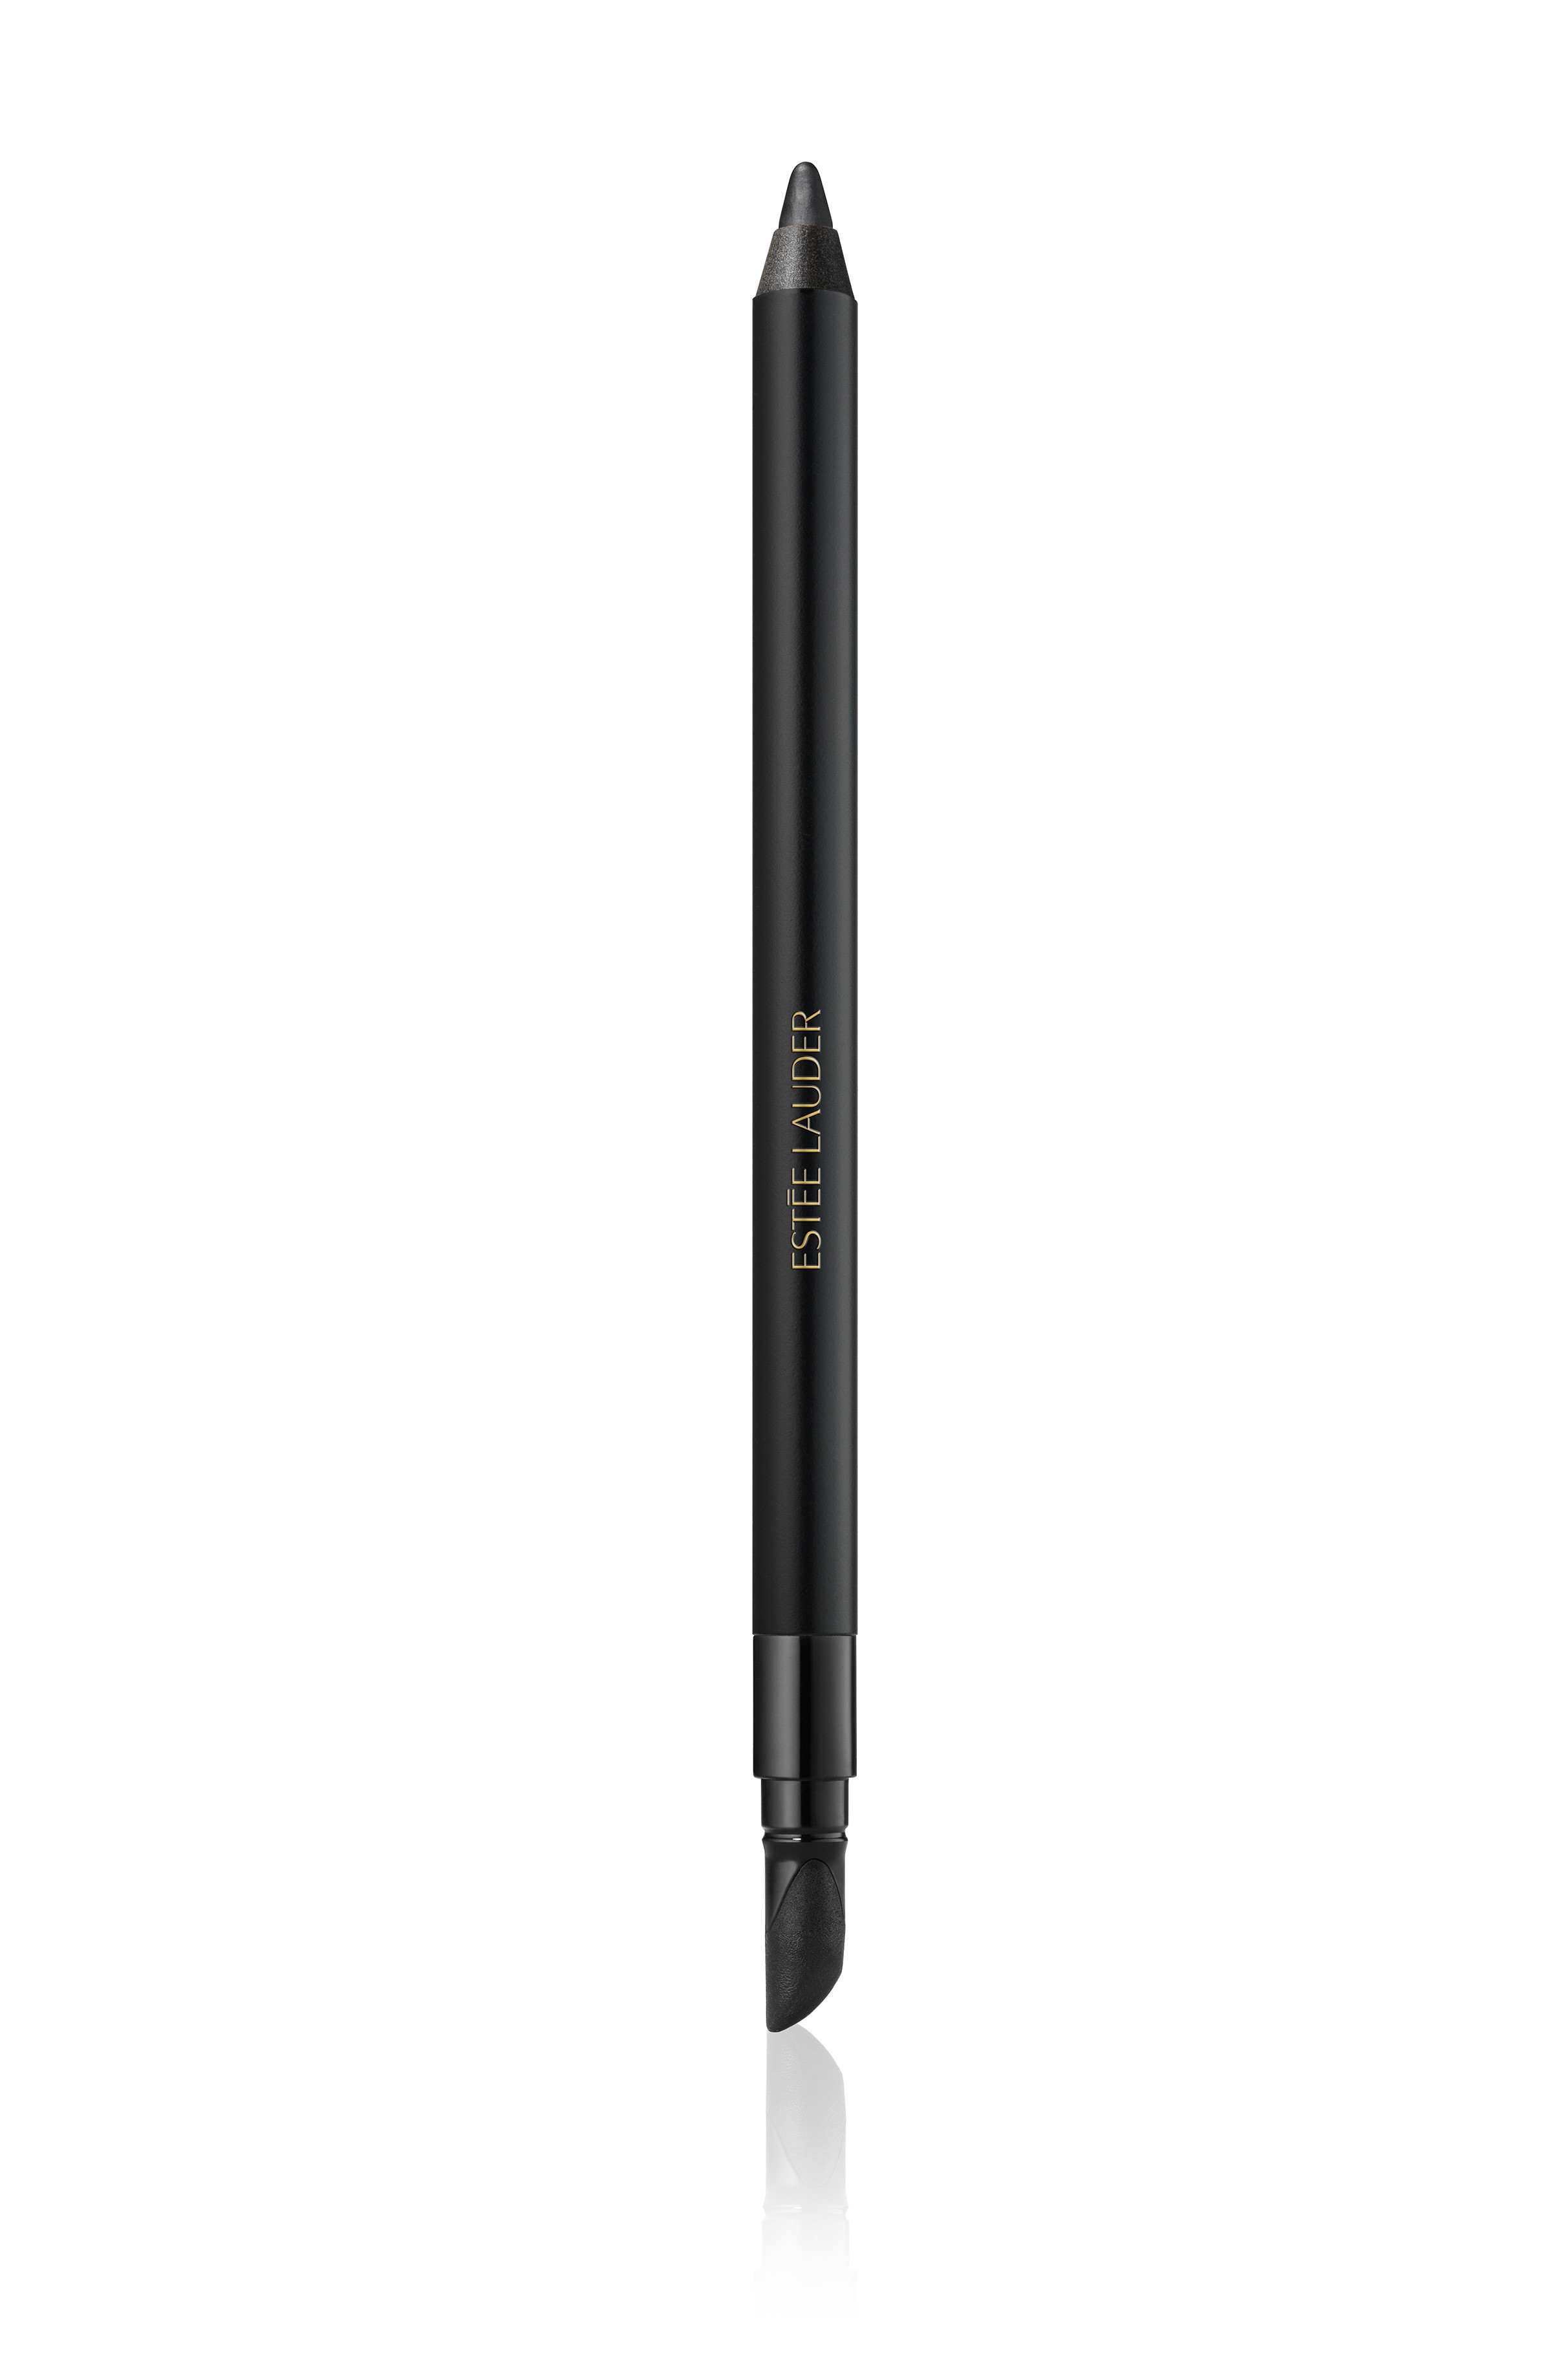 Double wear 24h waterproof gel eye pencil - 01 Onyx, Nero, large image number 0